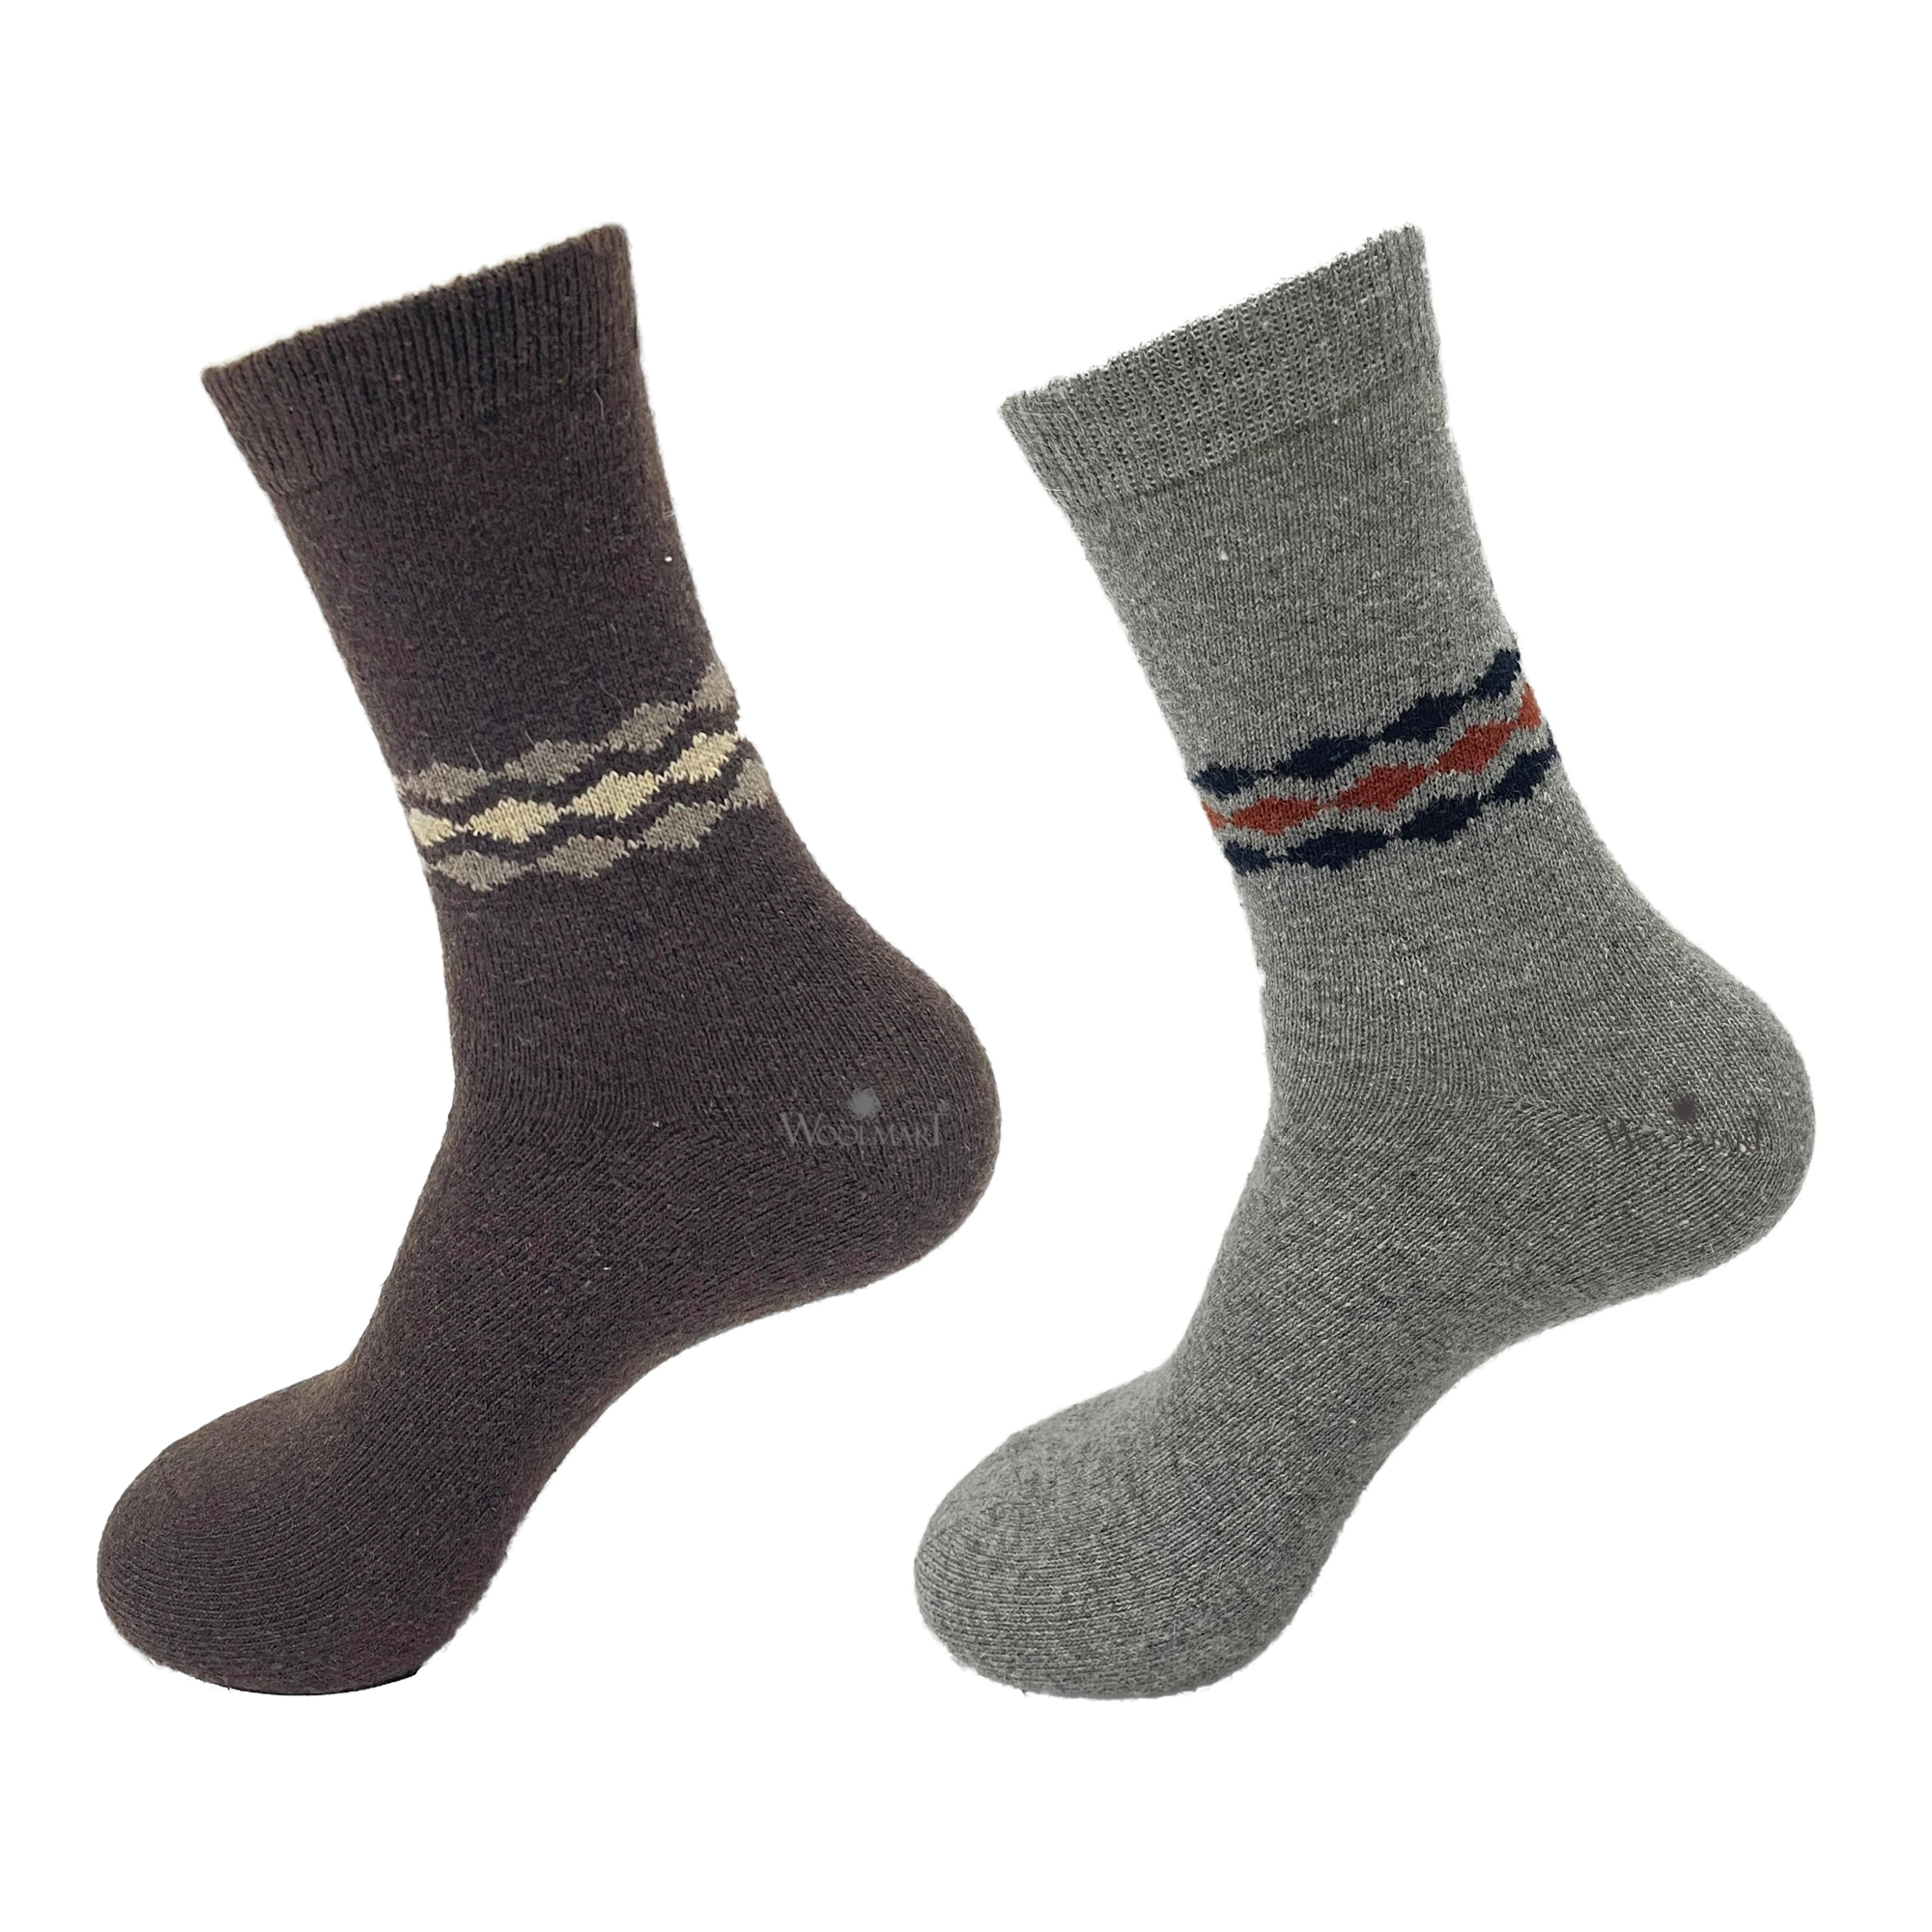 Warm Socks (Pack of 2) Brown & Grey